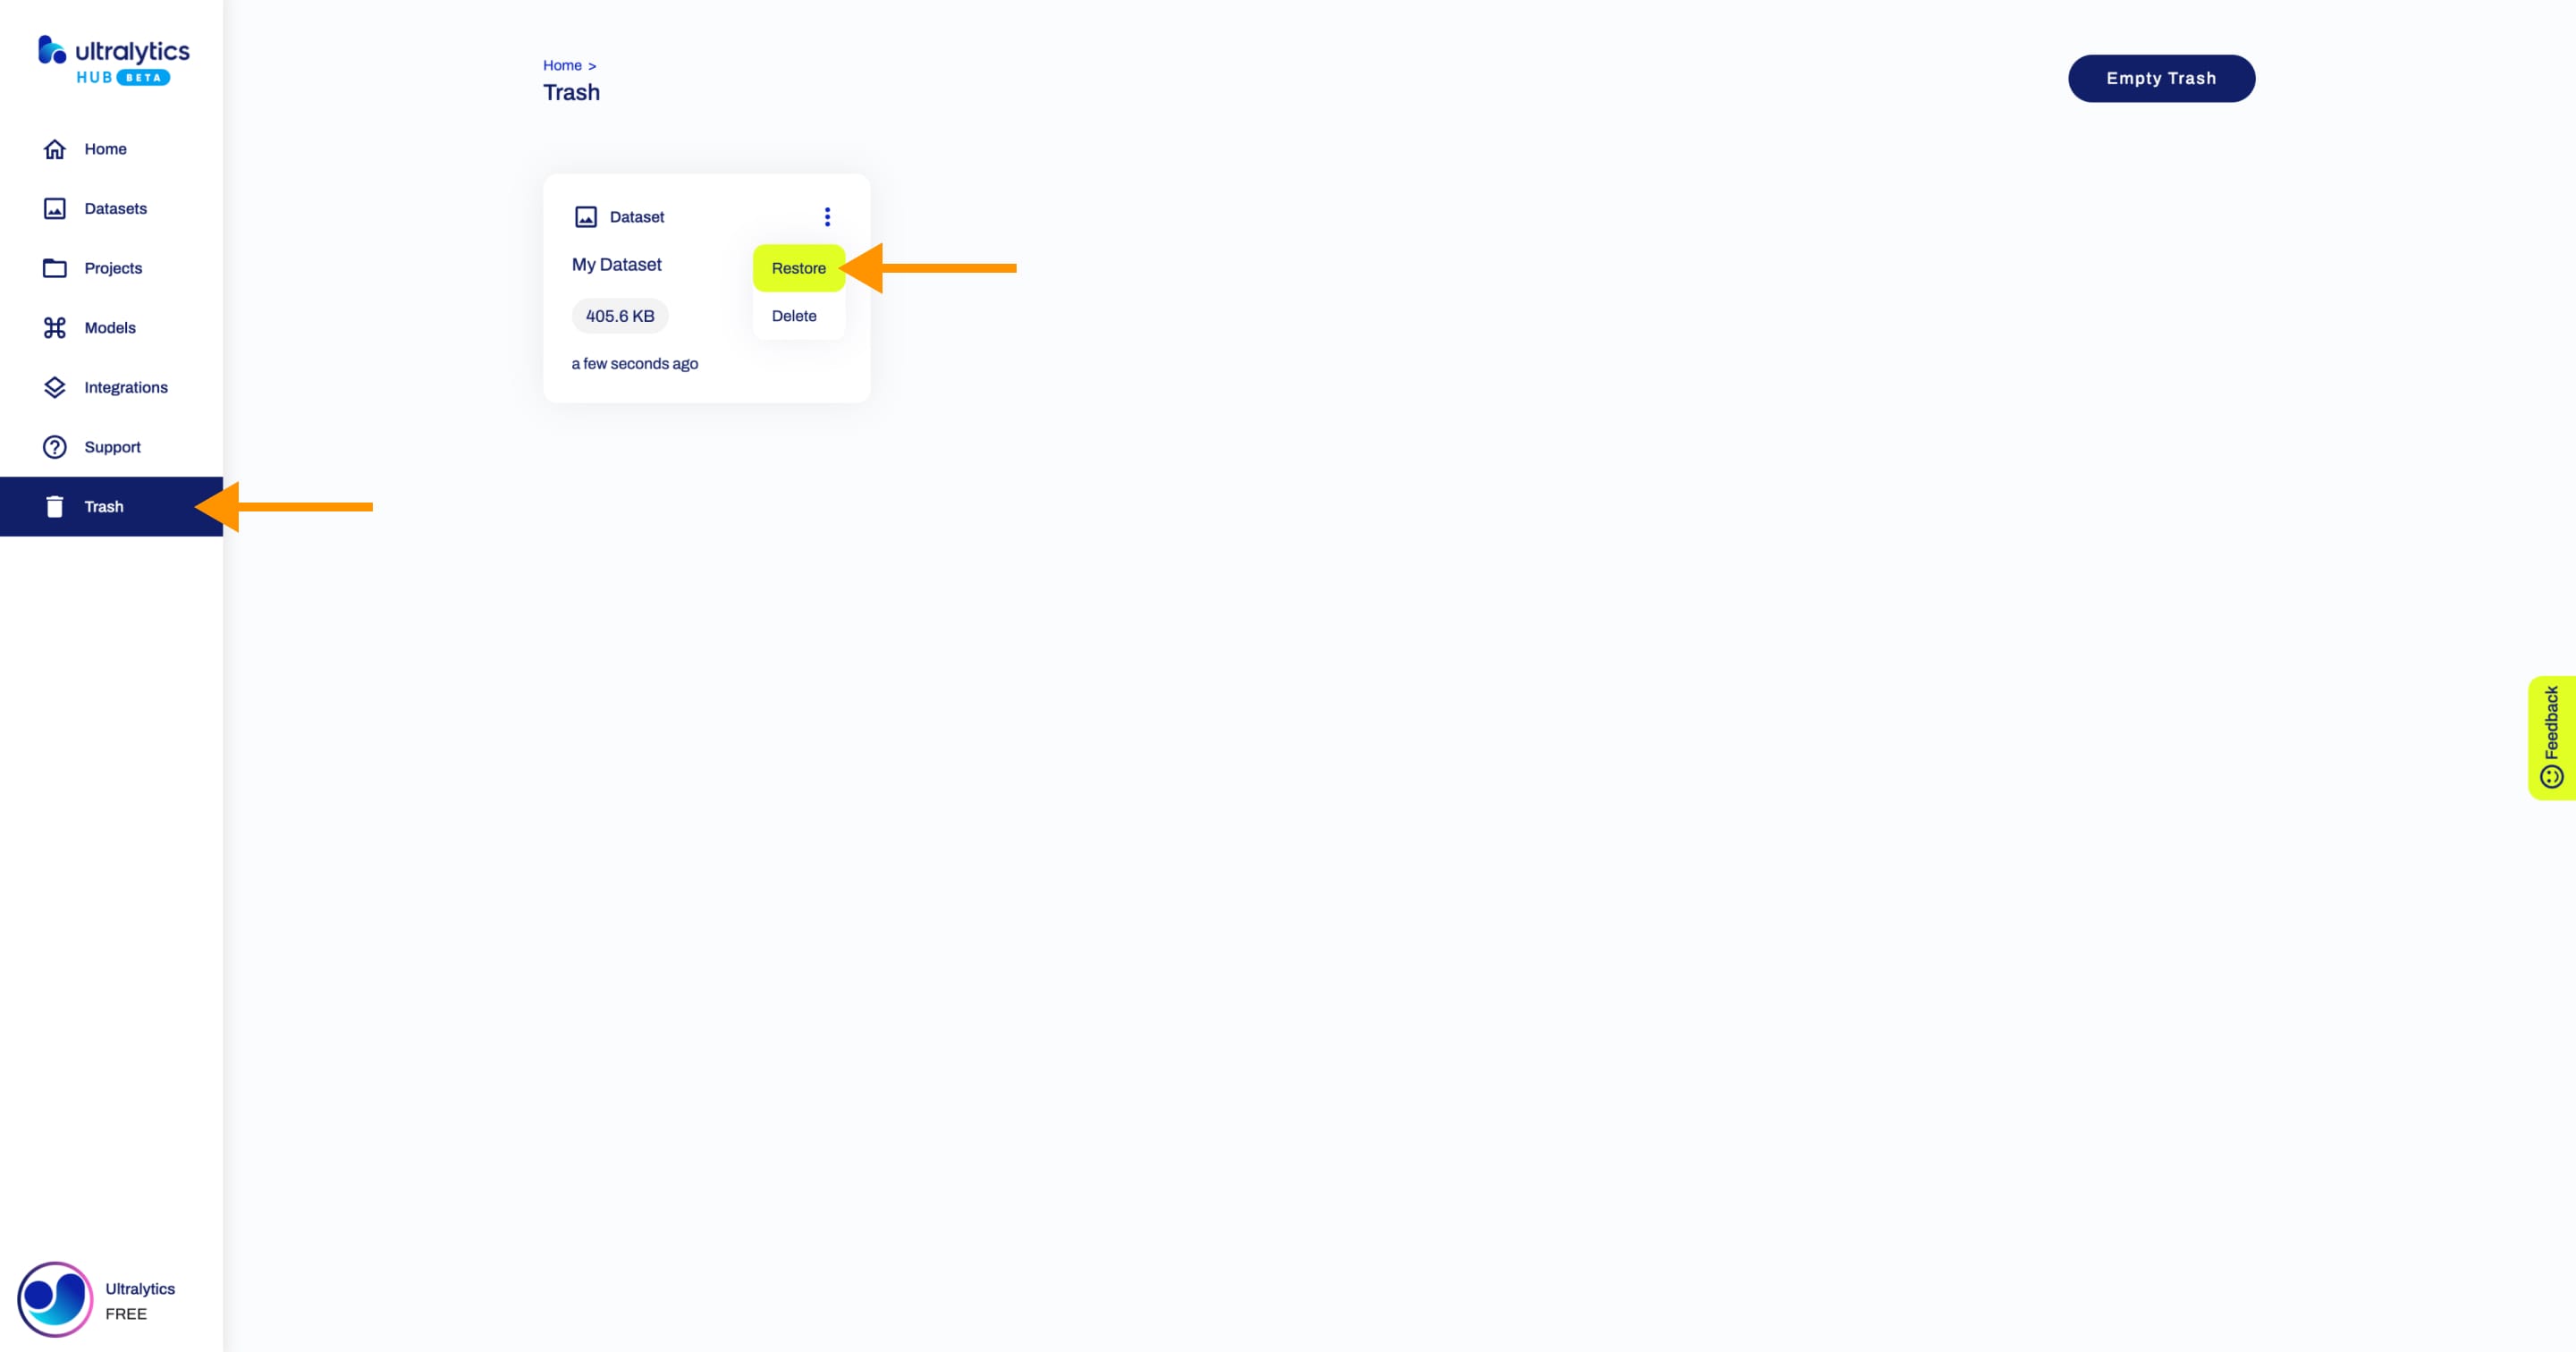 Ultralytics Скриншот страницы "Корзина" в HUB со стрелкой, указывающей на кнопку "Корзина" в боковой панели, и стрелкой, указывающей на опцию "Восстановить" одного из наборов данных